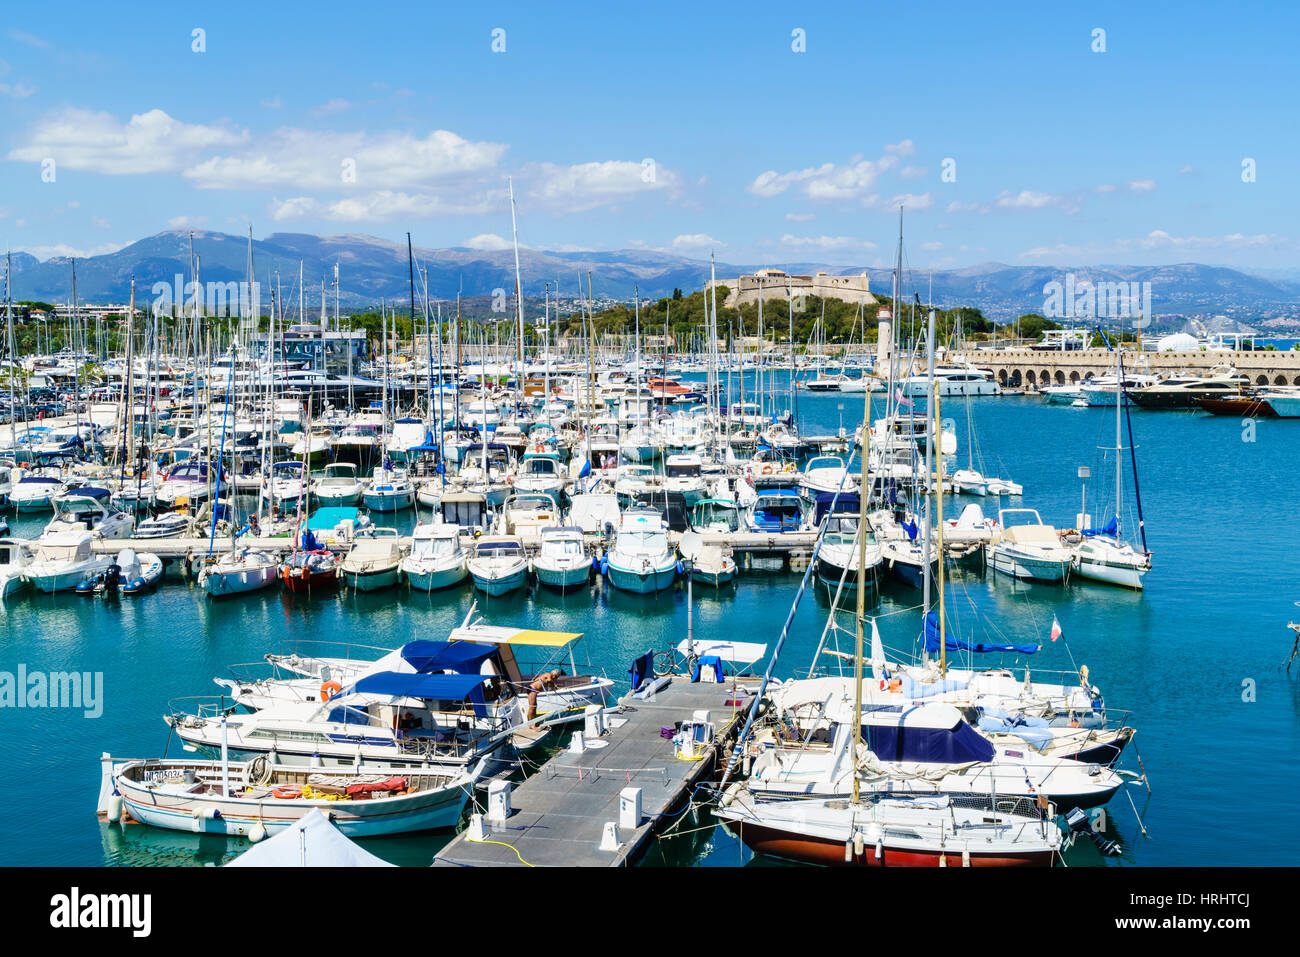 Le Fort Carré et le port, Antibes, Alpes-Maritimes, Côte d'Azur, Provence, Côte d'Azur, France, Méditerranée Banque D'Images